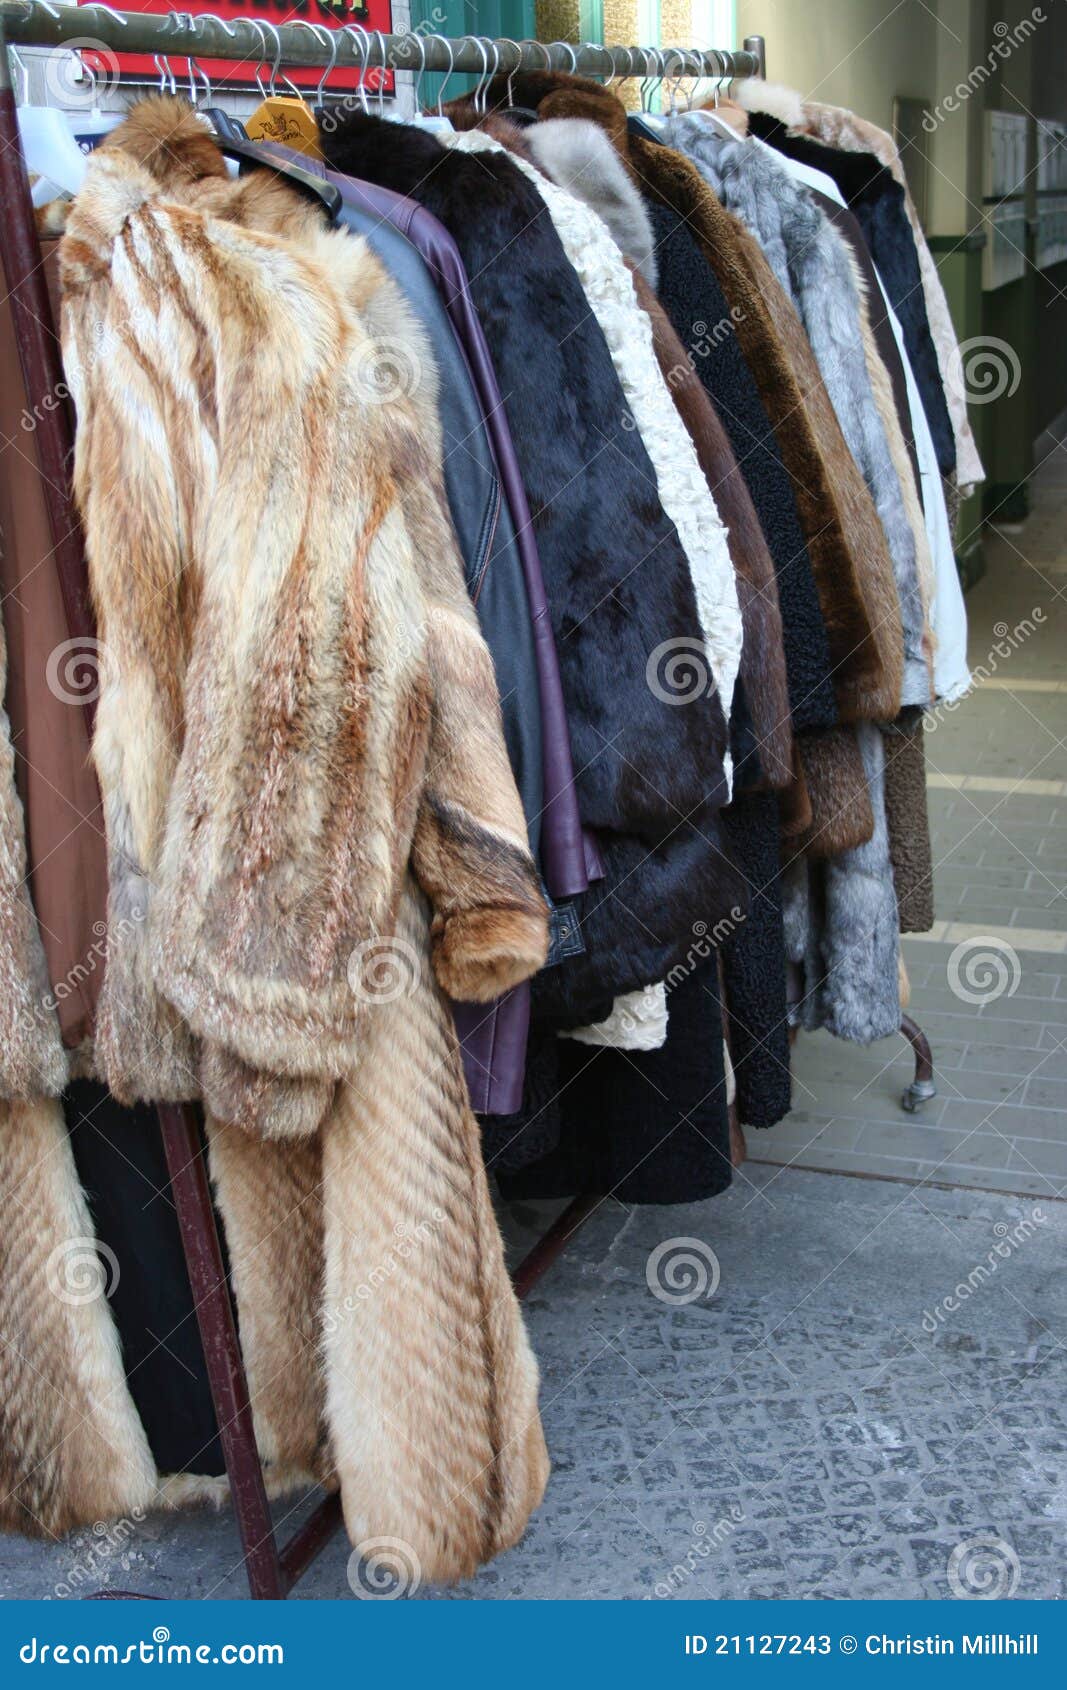 flee market - fur coats